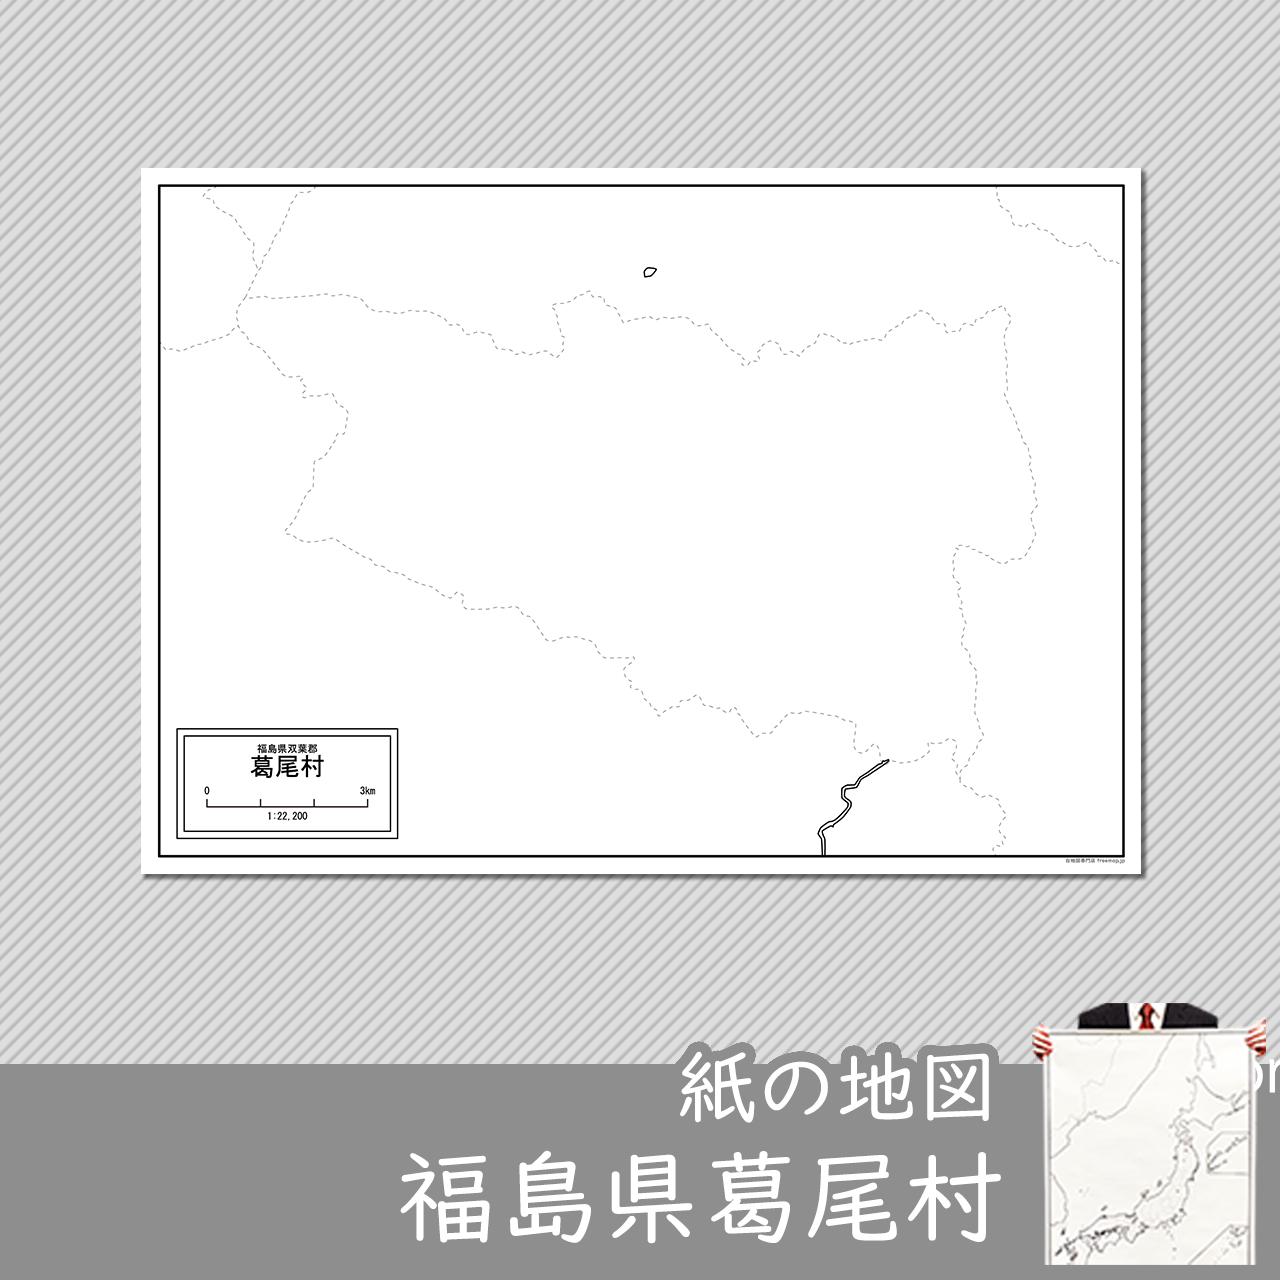 葛尾村の紙の白地図のサムネイル